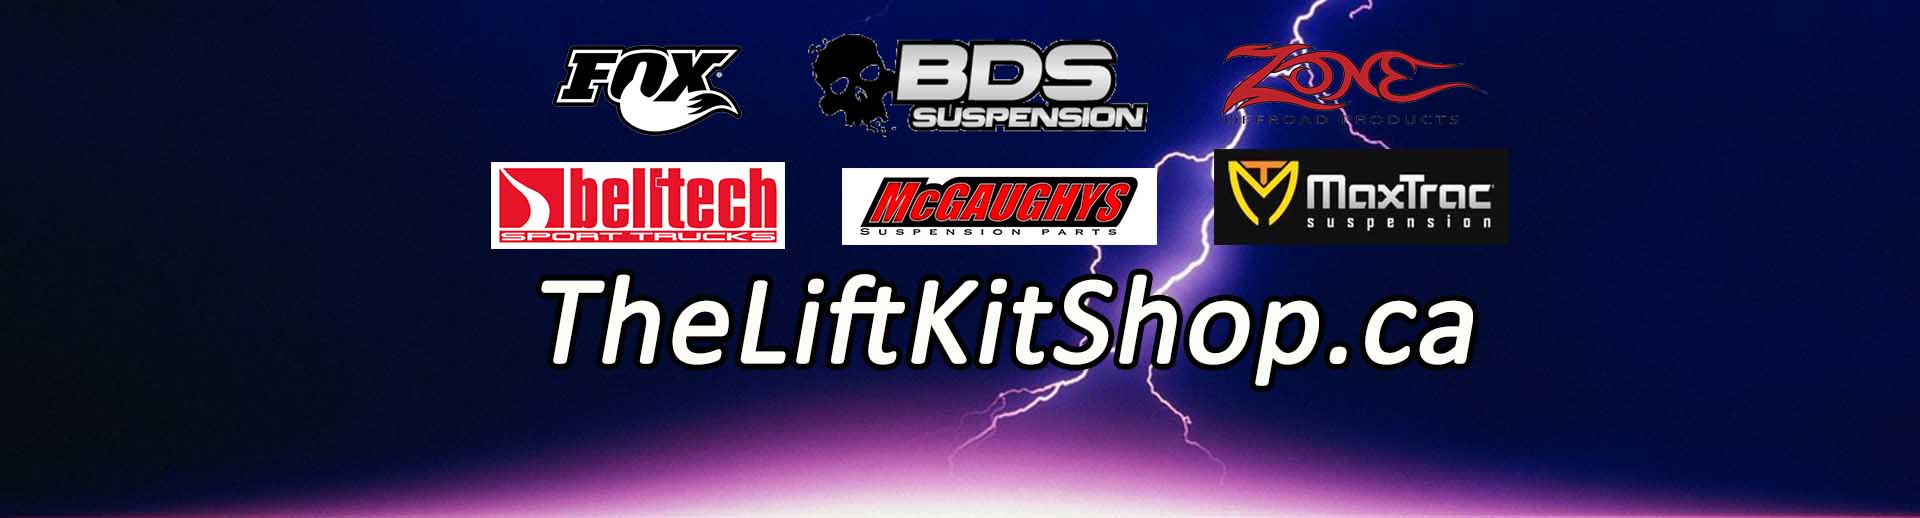 The Lift Kit Shop